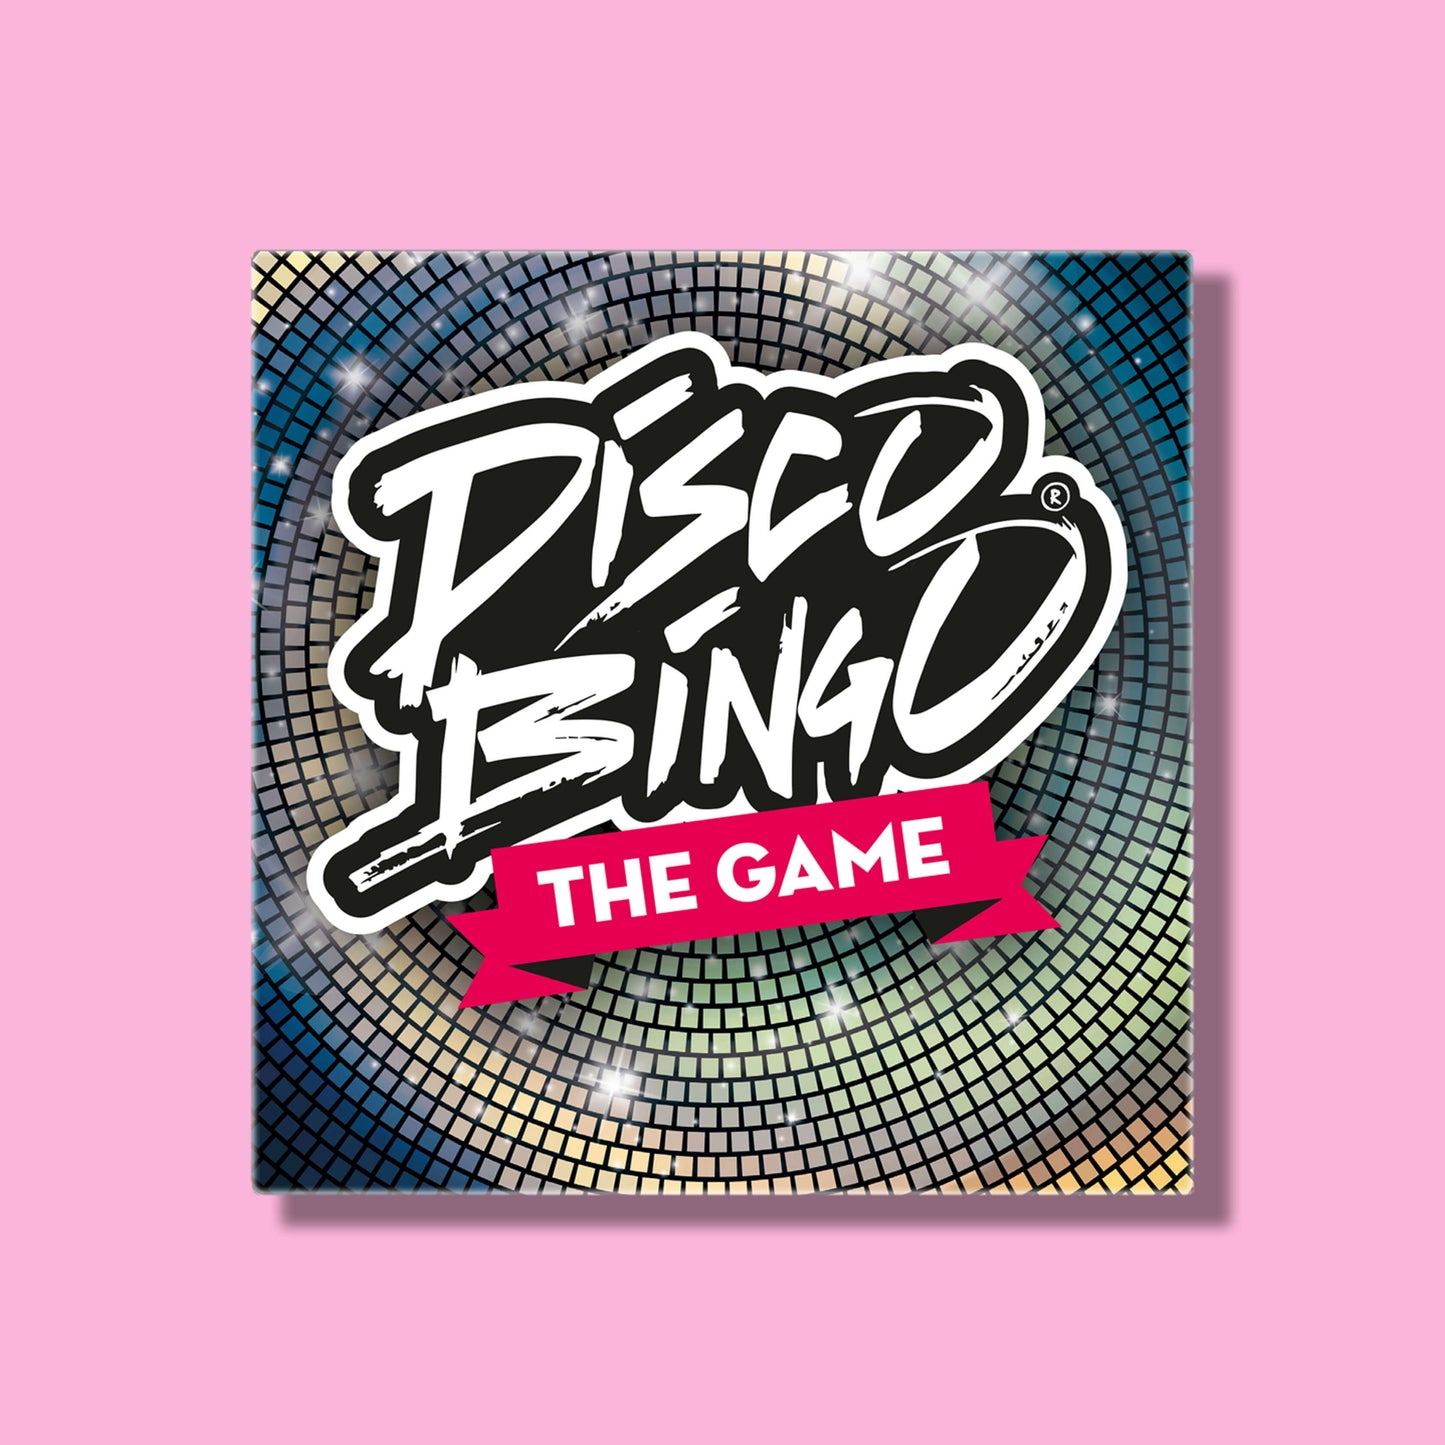 Disco Bingo The Eurovision Game Box